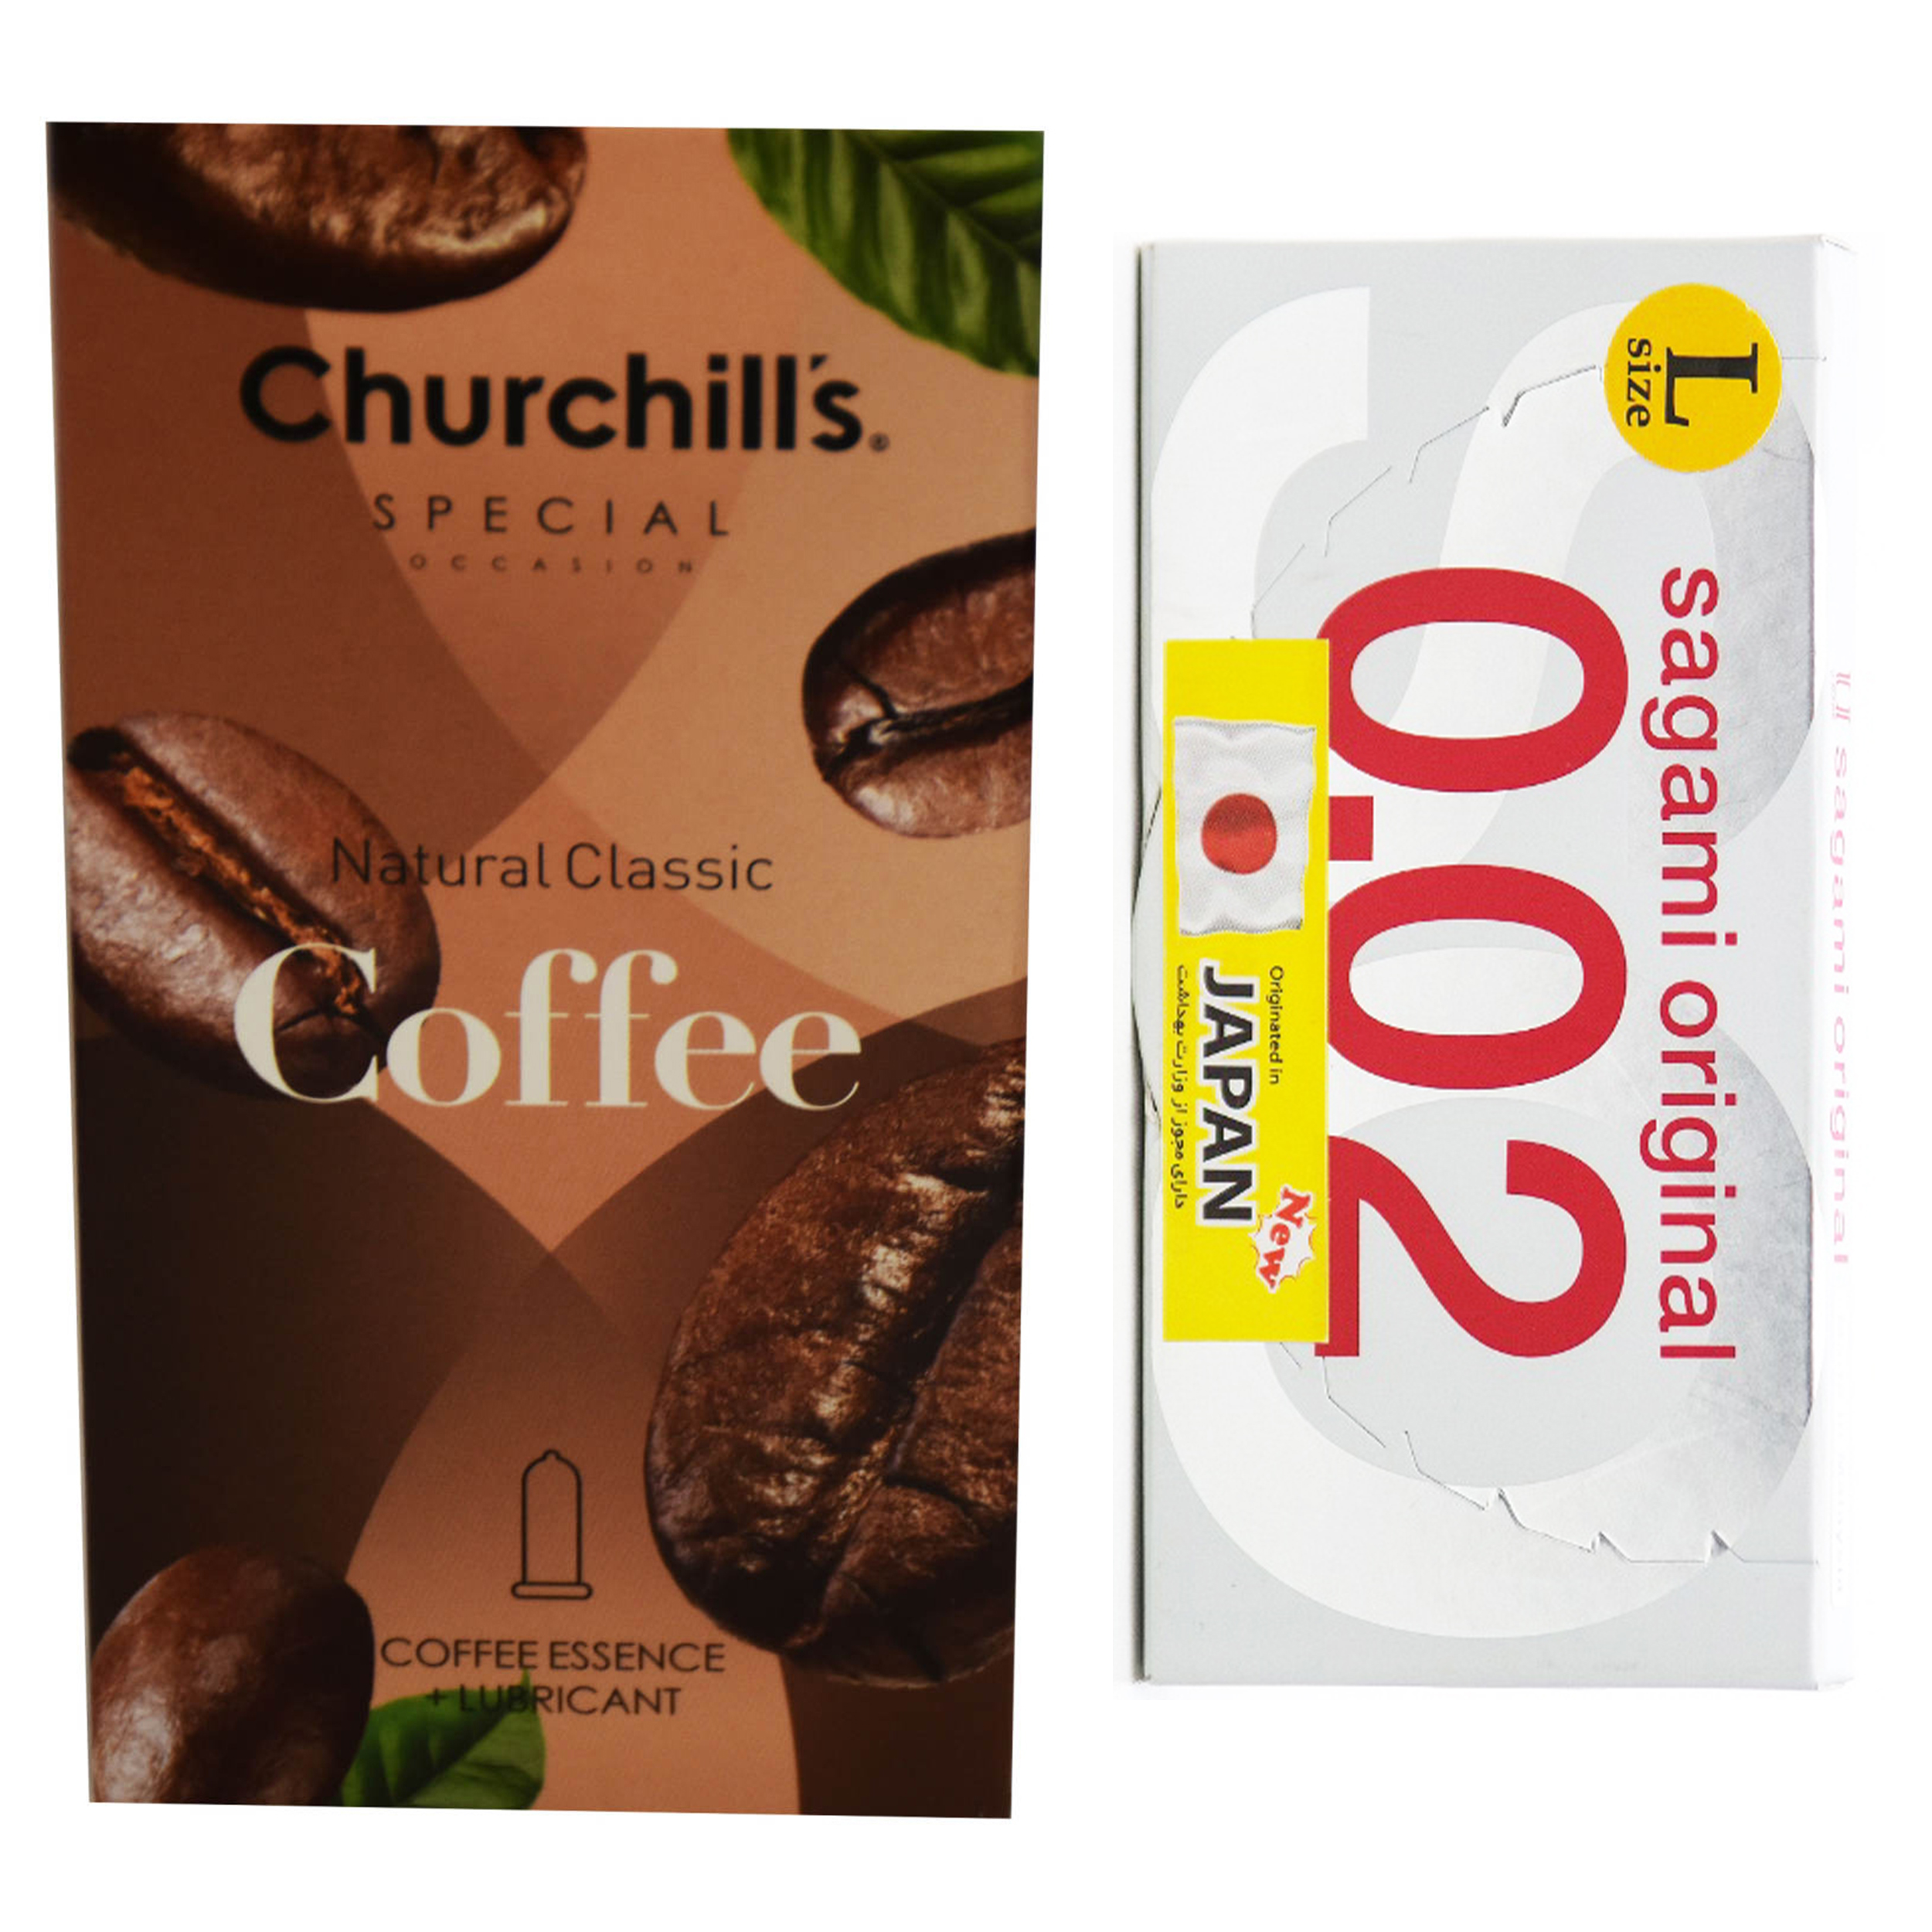 کاندوم چرچیلز مدل Coffee بسته 12 عددی به همراه کاندوم ساگامی کد 001 بسته 2 عددی